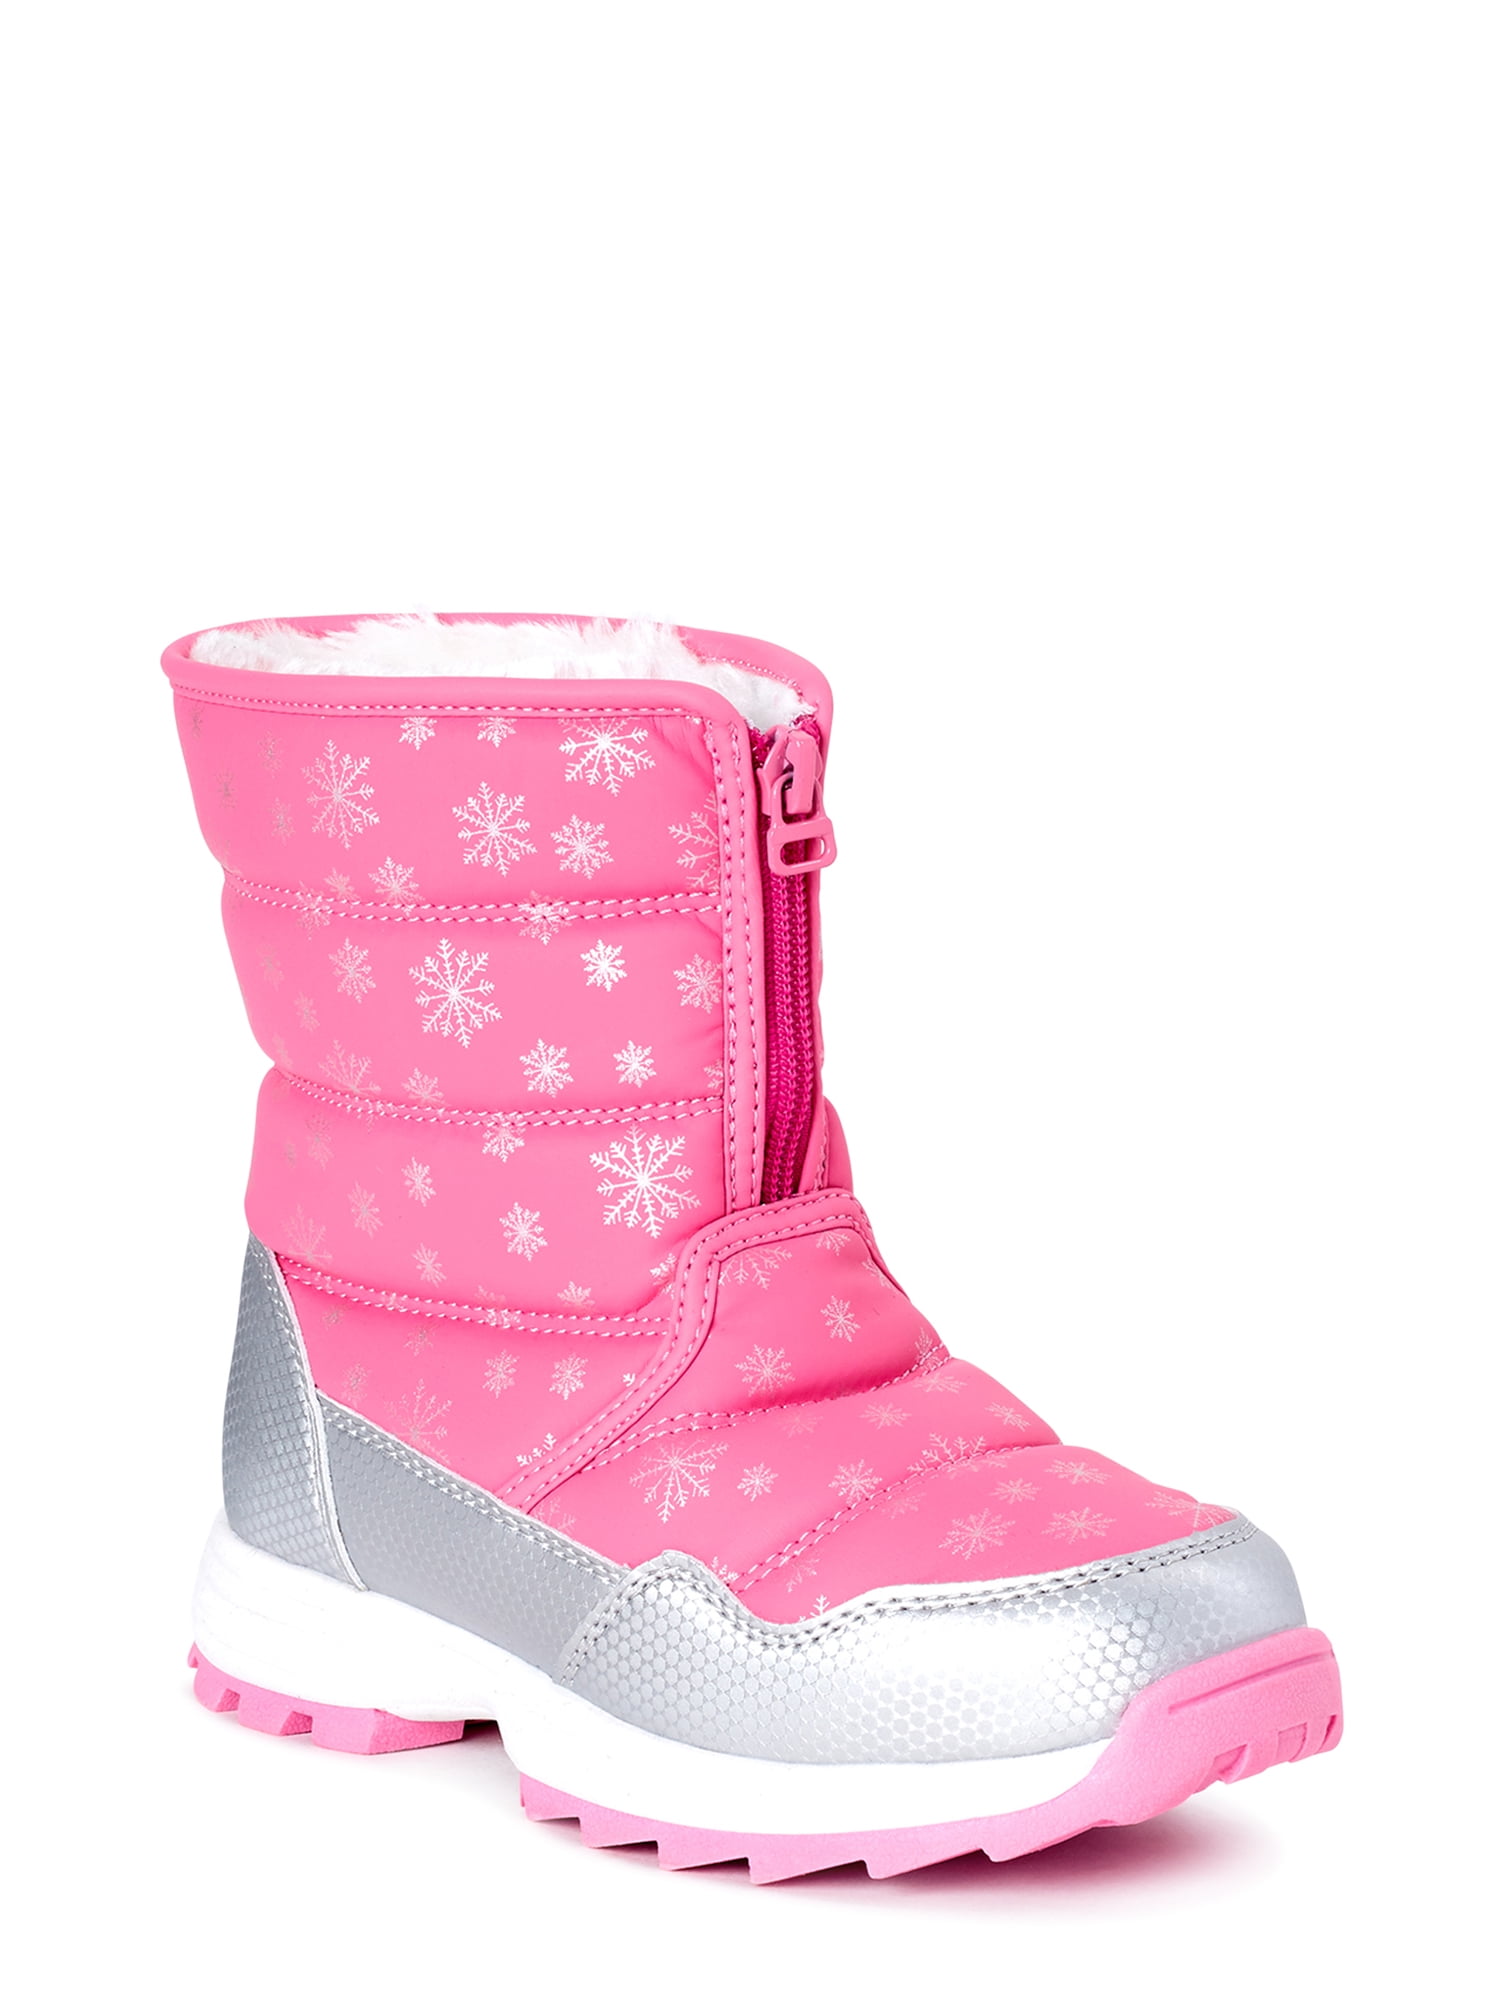 walmart little girl boots